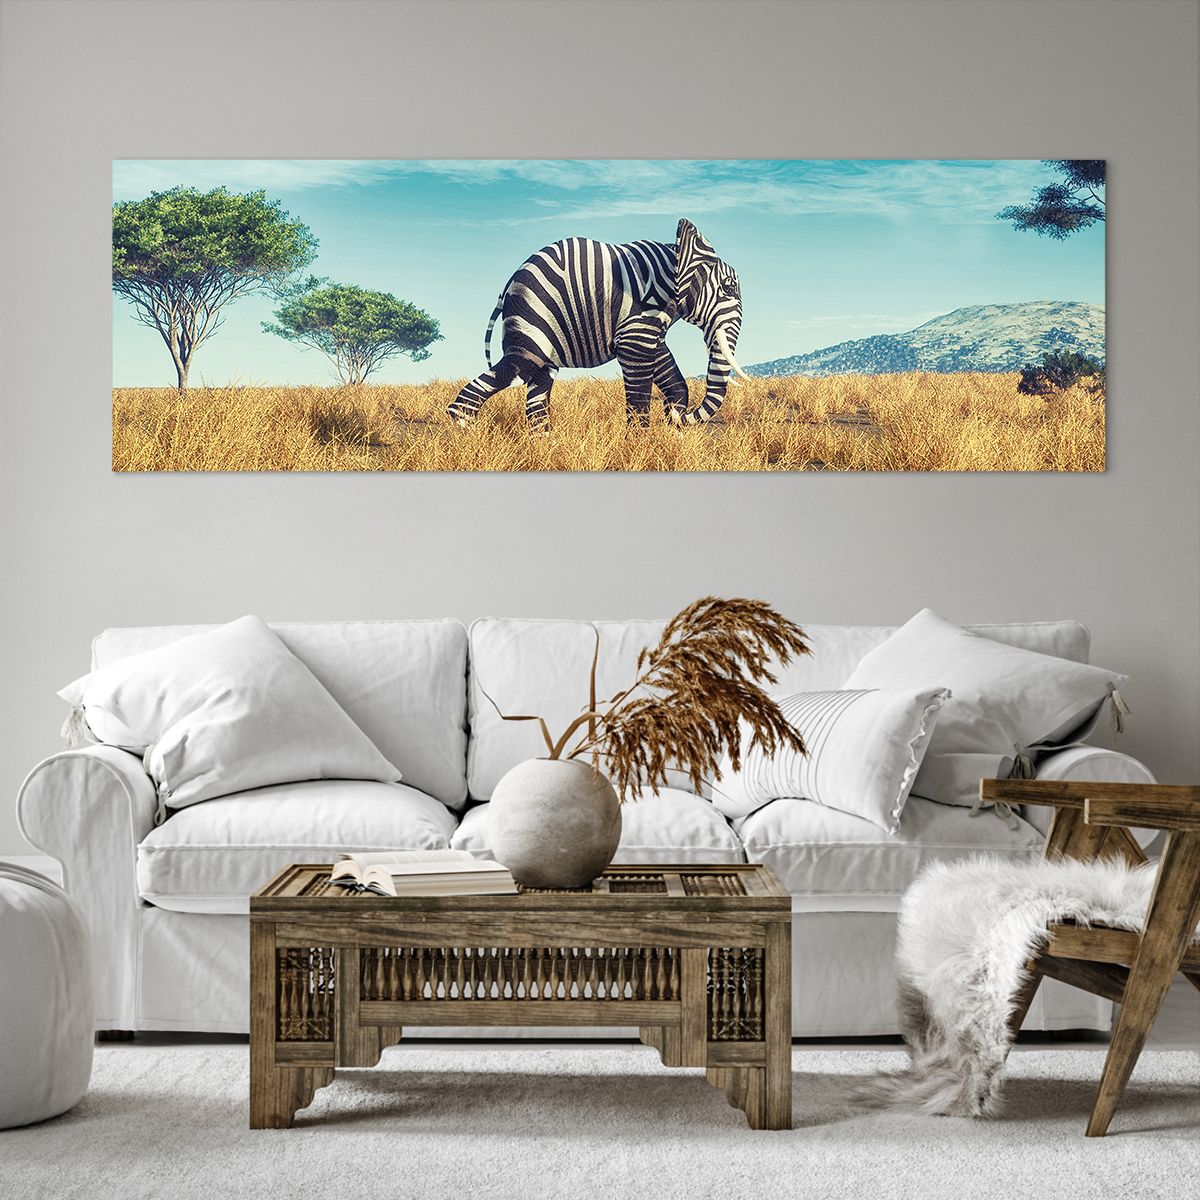 Bild auf Leinwand Abstraktion, Bild auf Leinwand Elefant, Bild auf Leinwand Rippen, Bild auf Leinwand Landschaft, Bild auf Leinwand Afrika